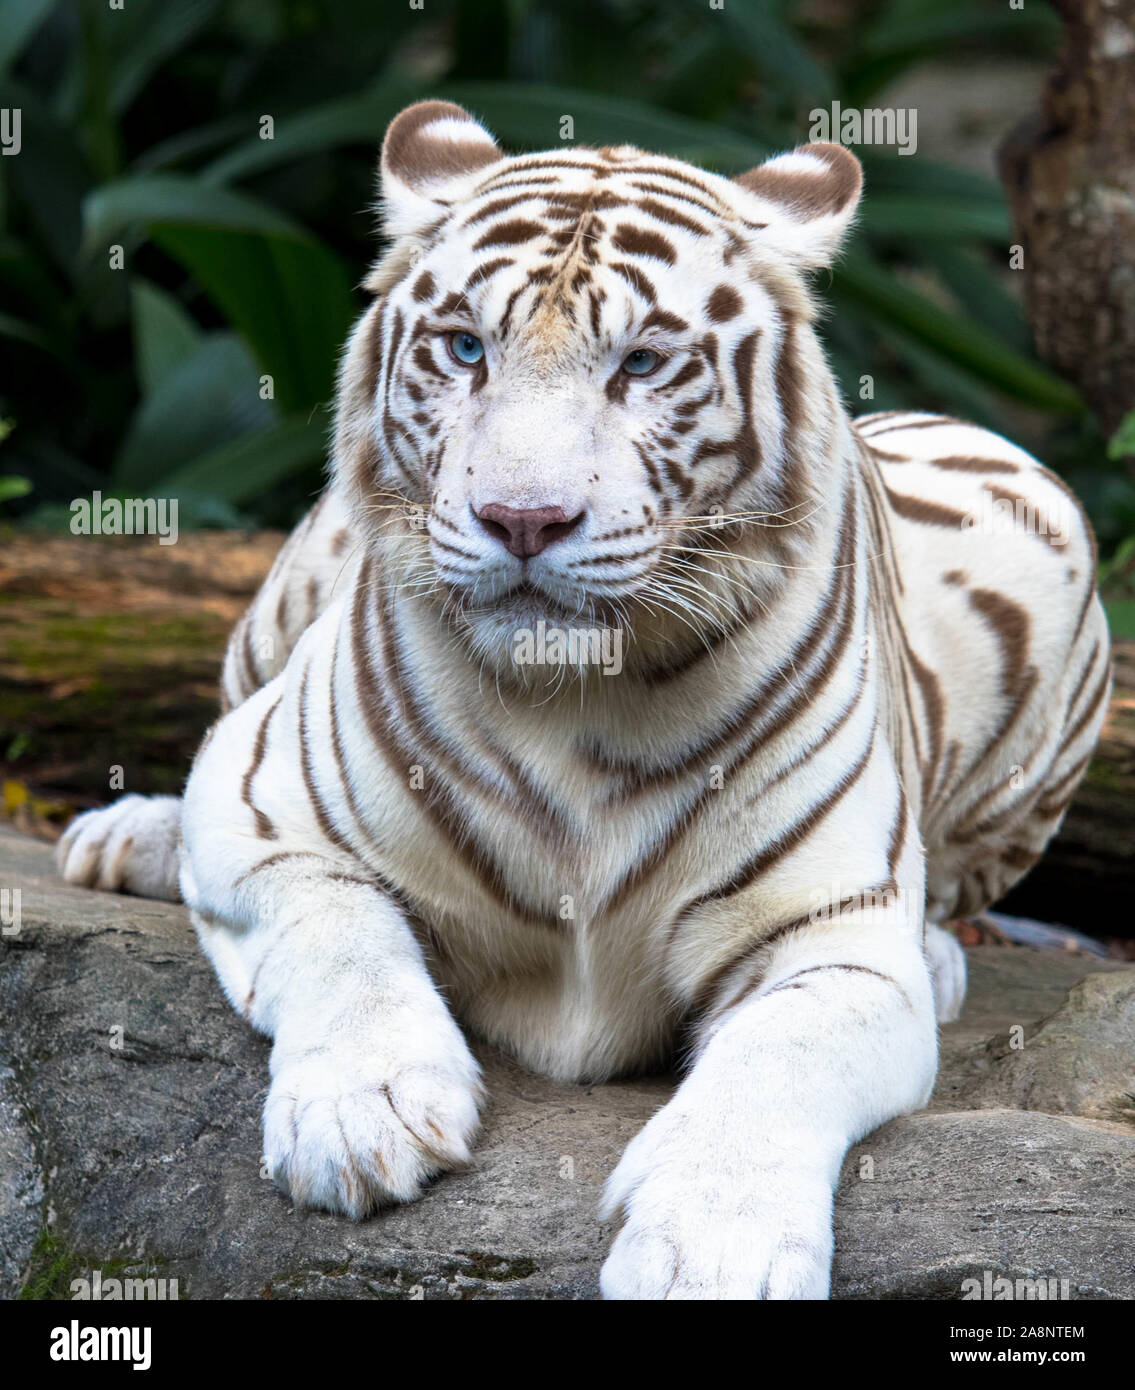 Tigre blanco en una roca Foto de stock